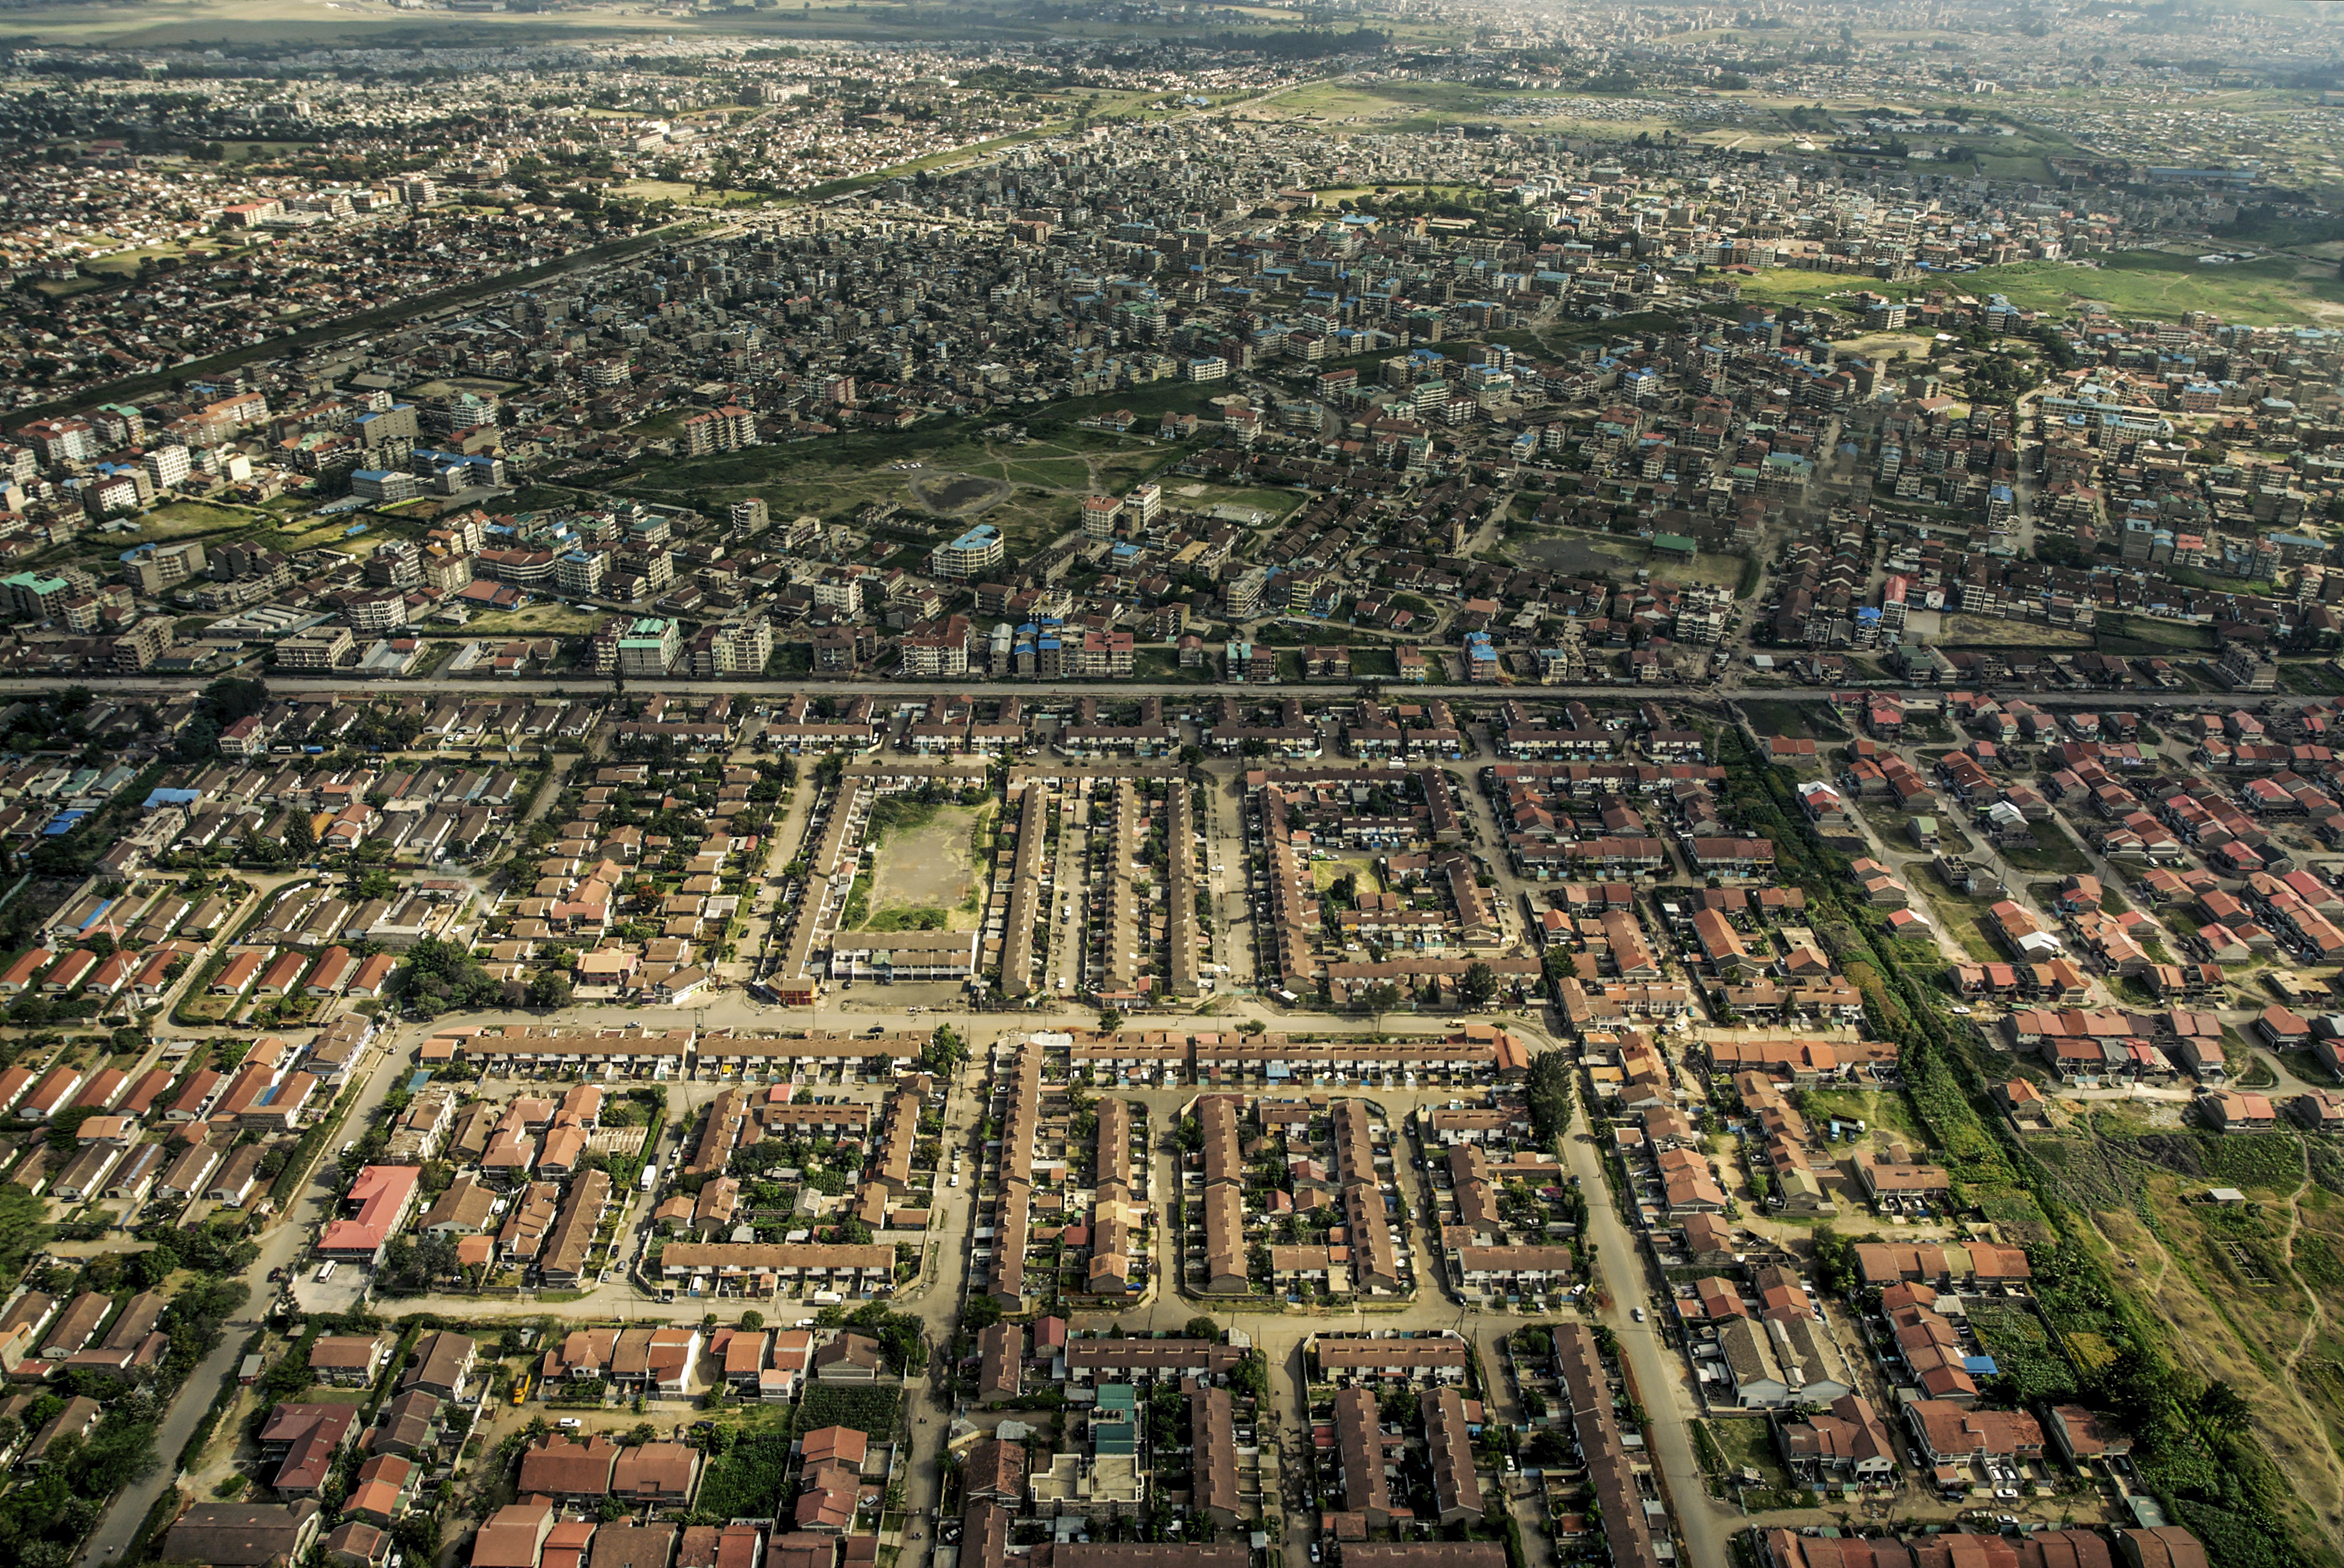 Vista aérea de los alrededores de Nairobi